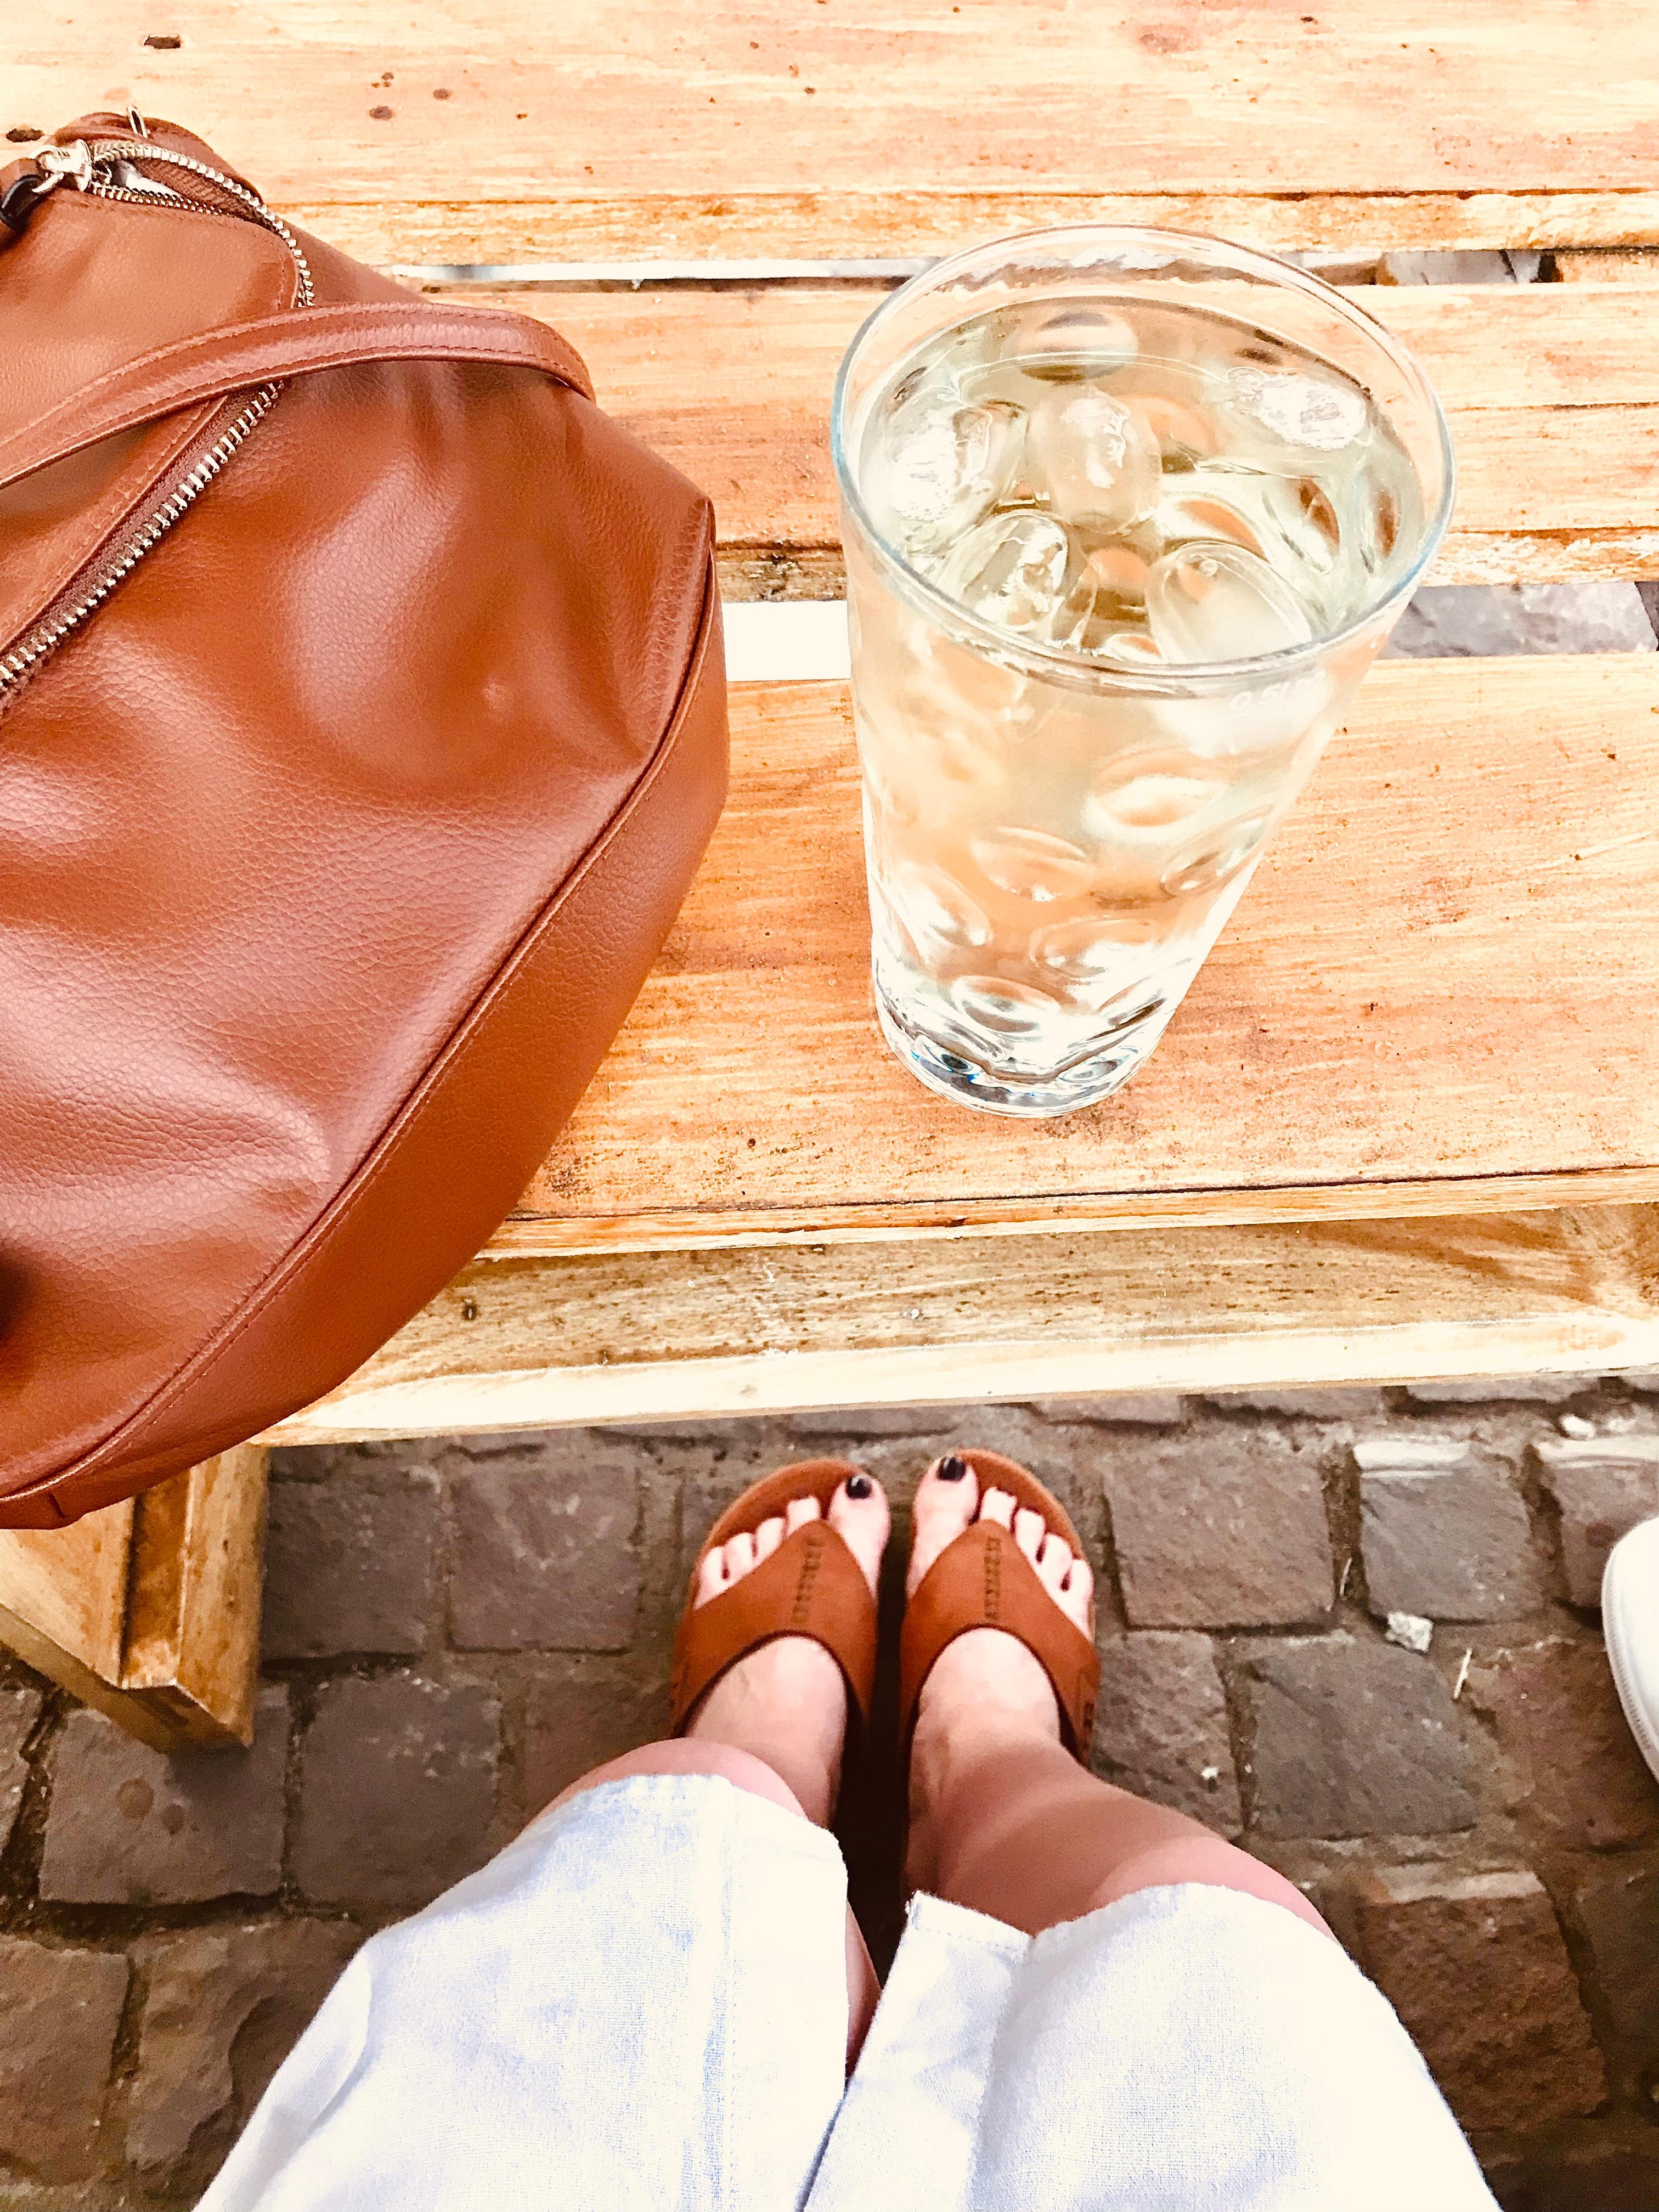 It’s wine 🍷 o’clock 
#mittwoch #sommerabend #outside #winebar #weissweinschorle #schoenersommerabend 